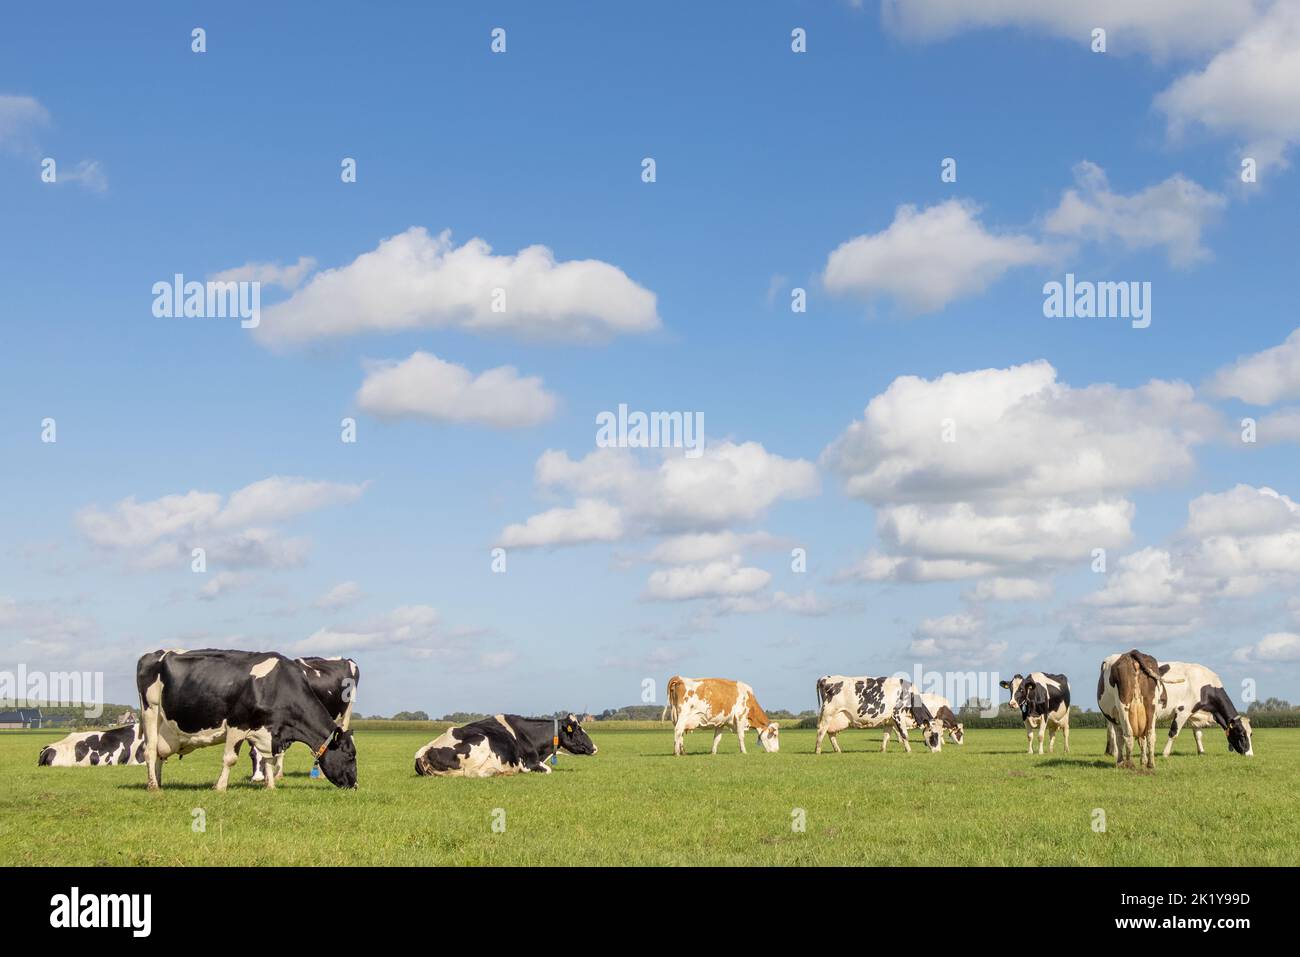 Gruppo di mucche pascolo nel pascolo, tranquillo e soleggiato in paesaggio olandese di terra pianeggiante con un cielo blu con le nuvole Foto Stock